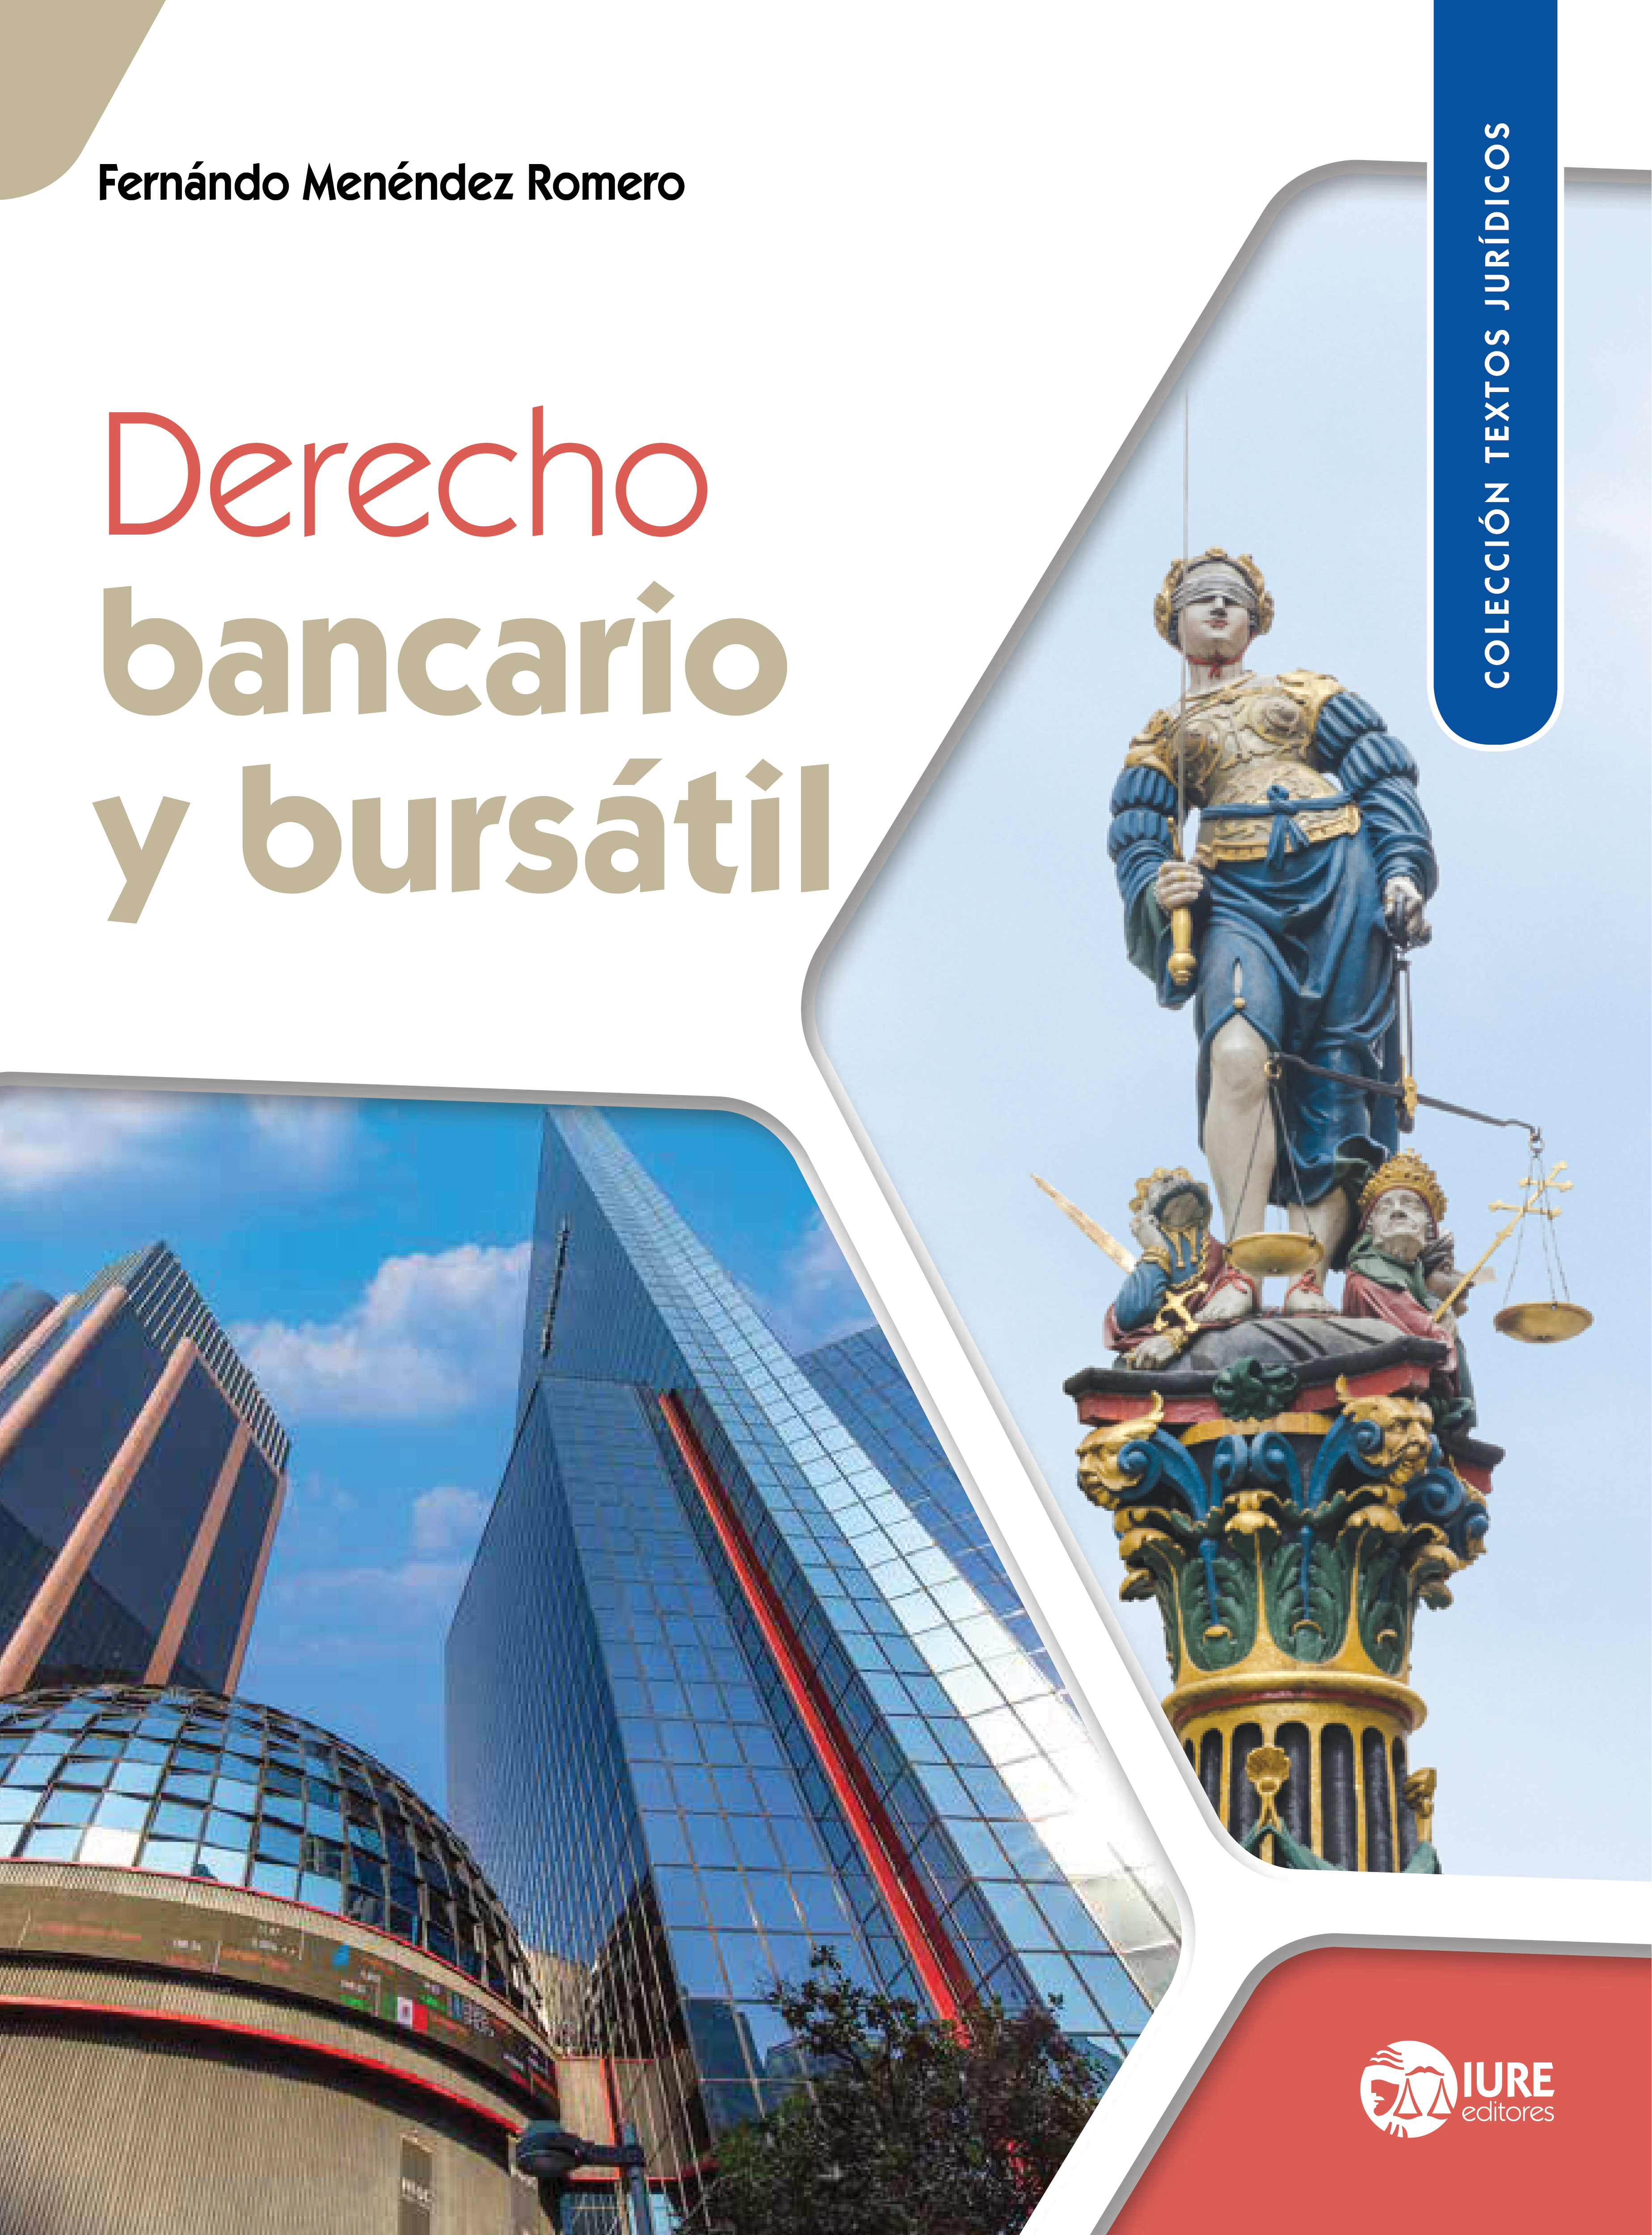 Digestos y citarios by Biblioteca Derecho - Issuu